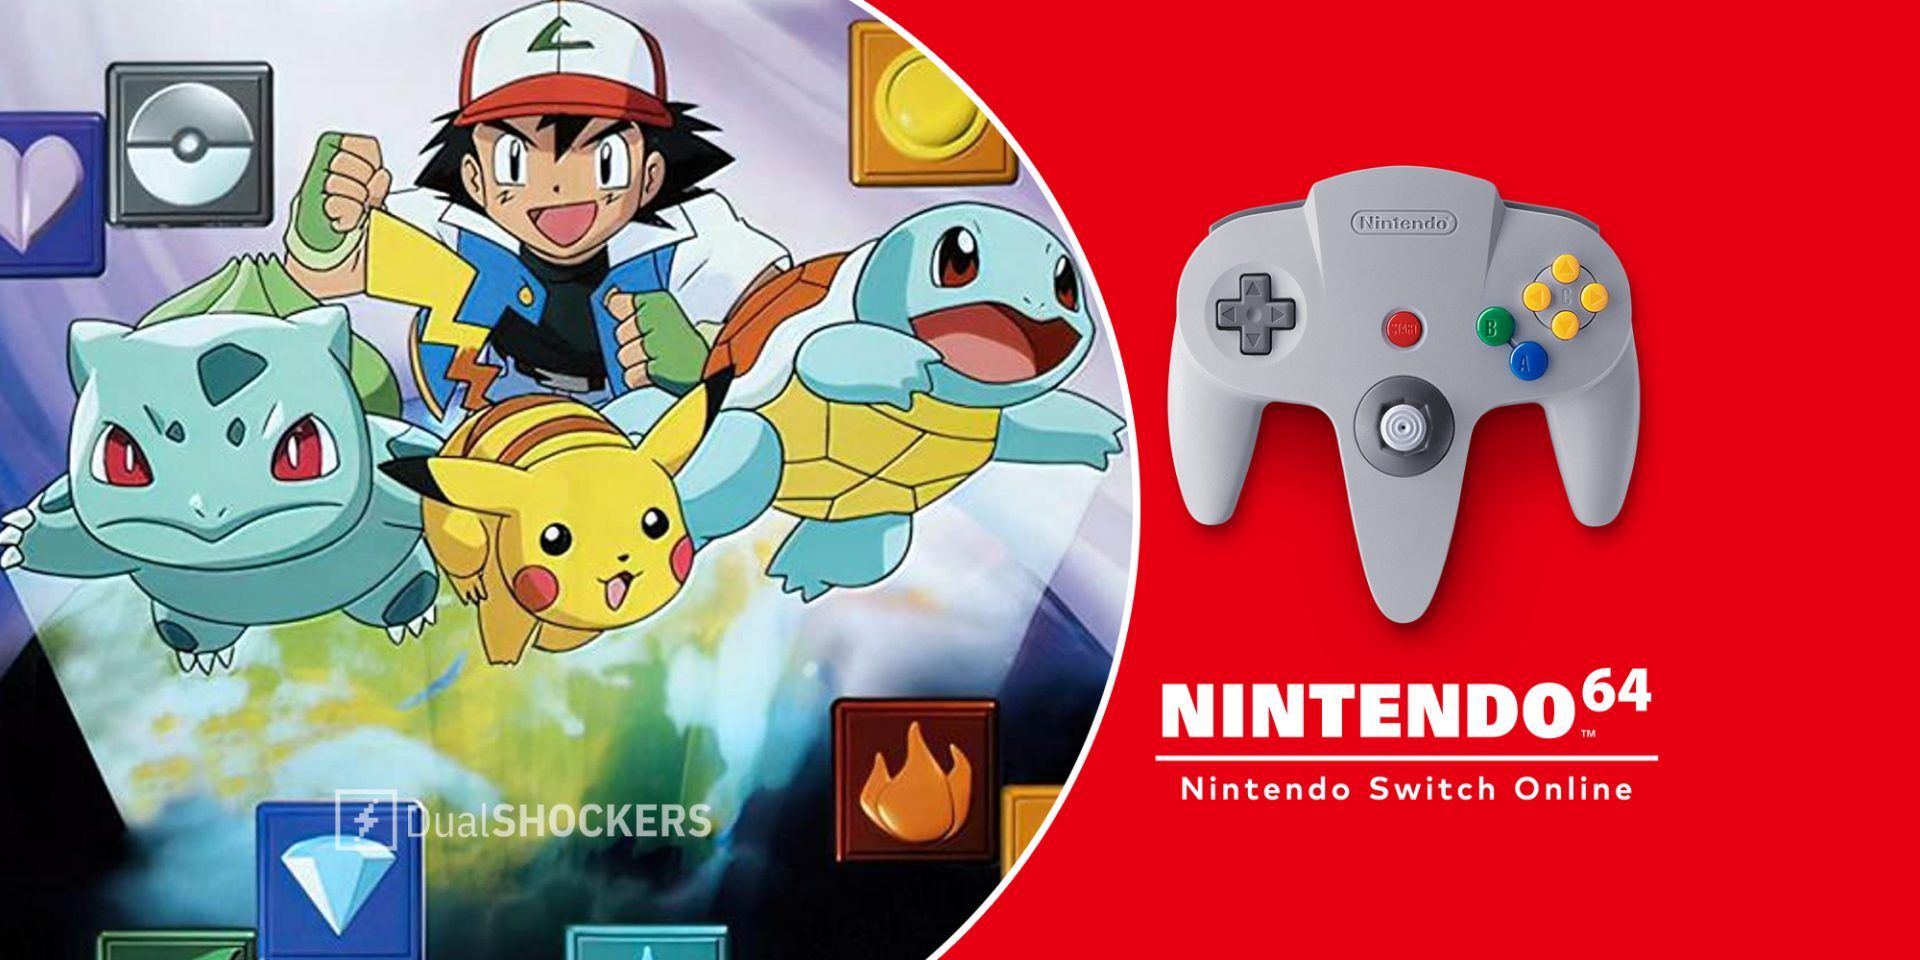 Nintendo Switch Online + Expansion Pack: Pokémon Puzzle League is